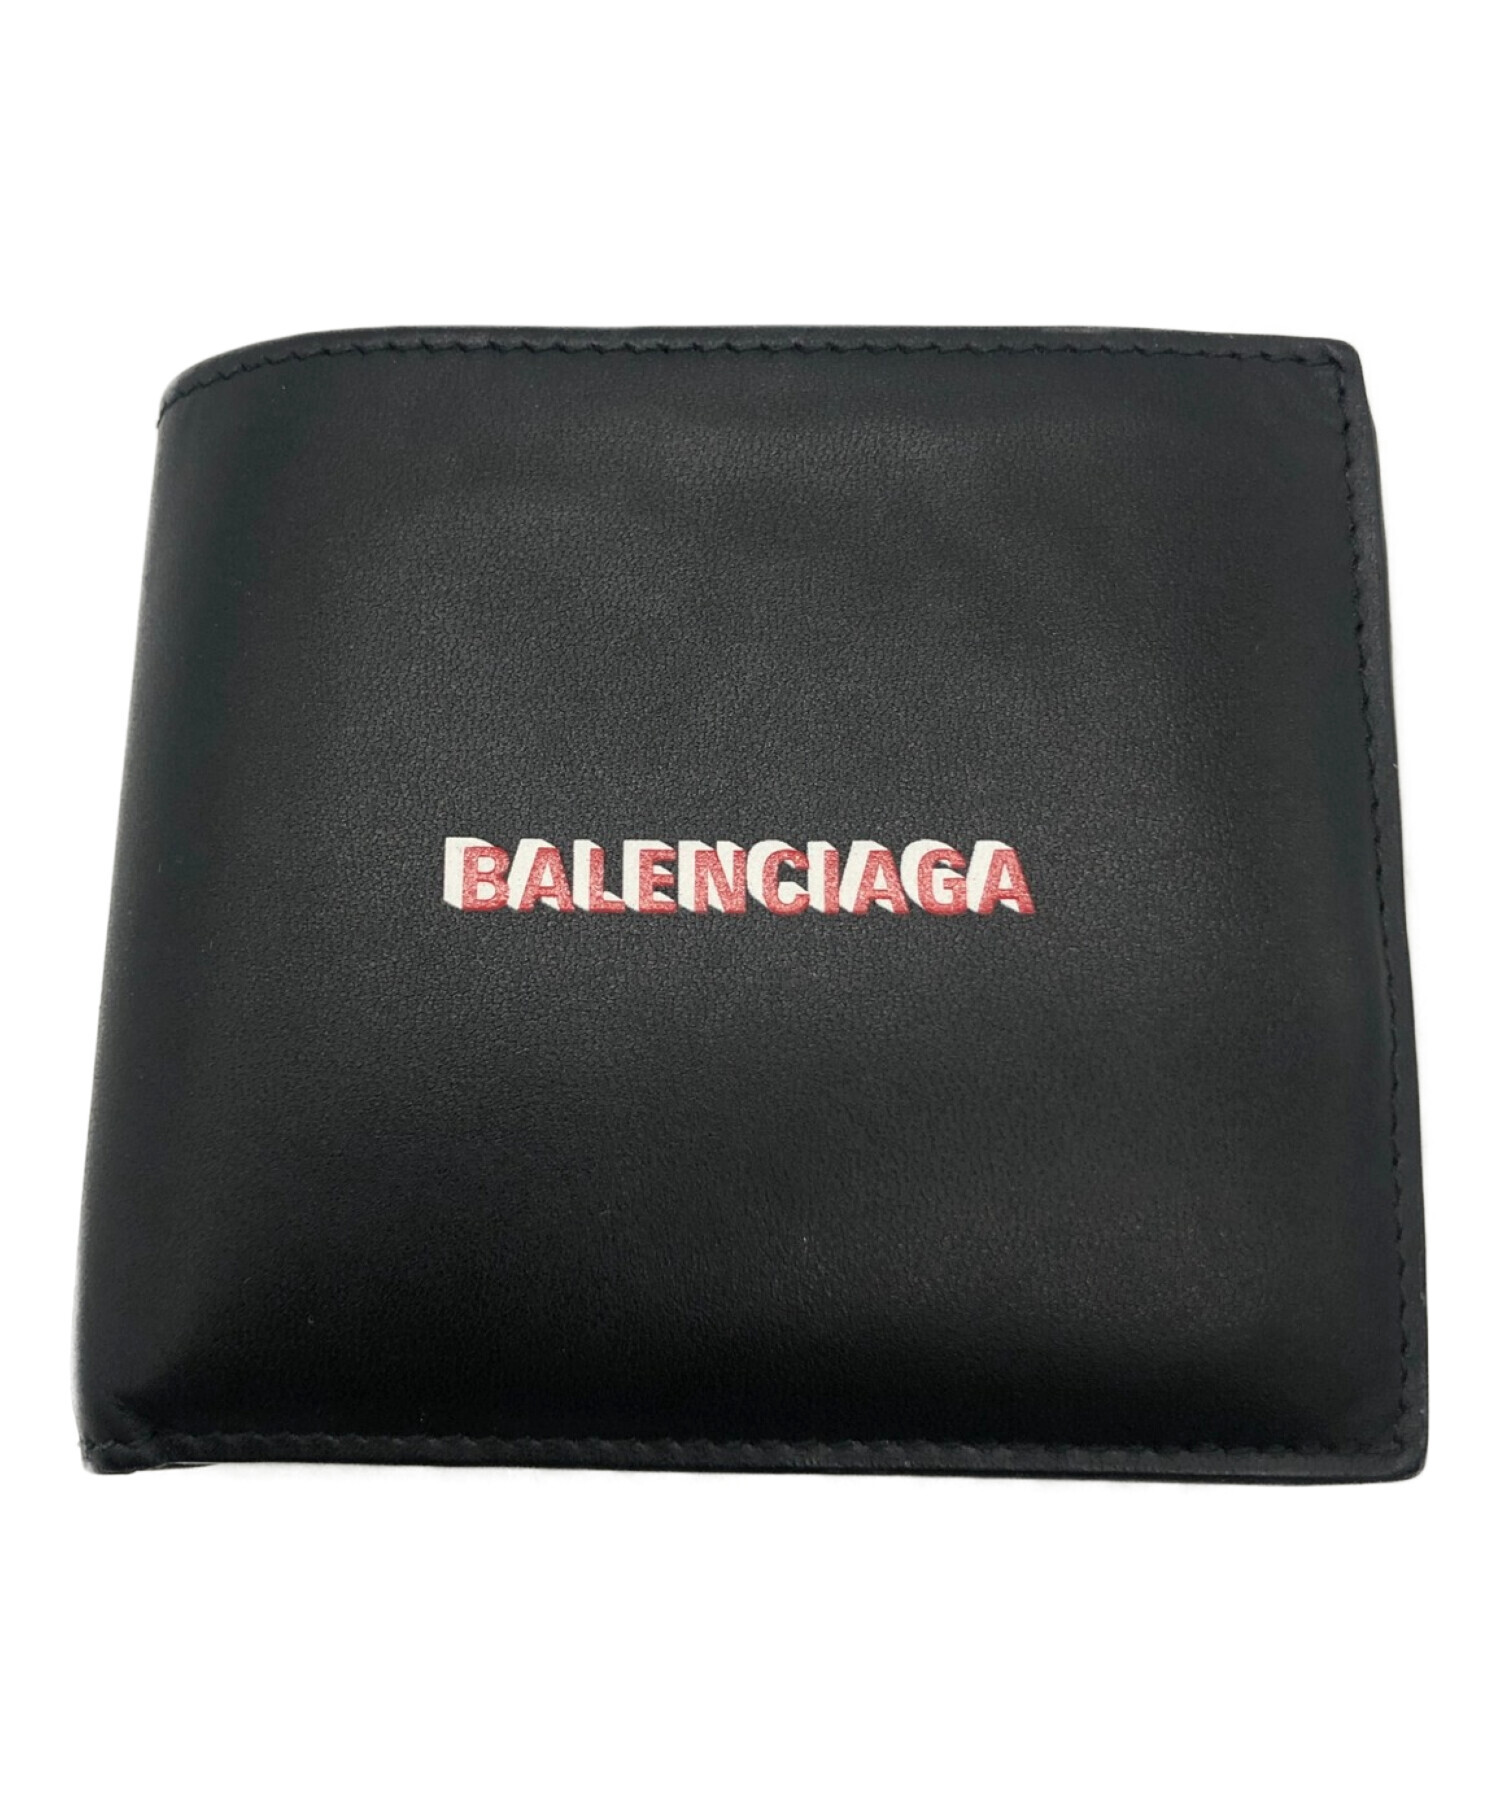 バレンシアガ財布BALENCIAGA バレンシアガ 二つ折り財布 【値下げ交渉可】